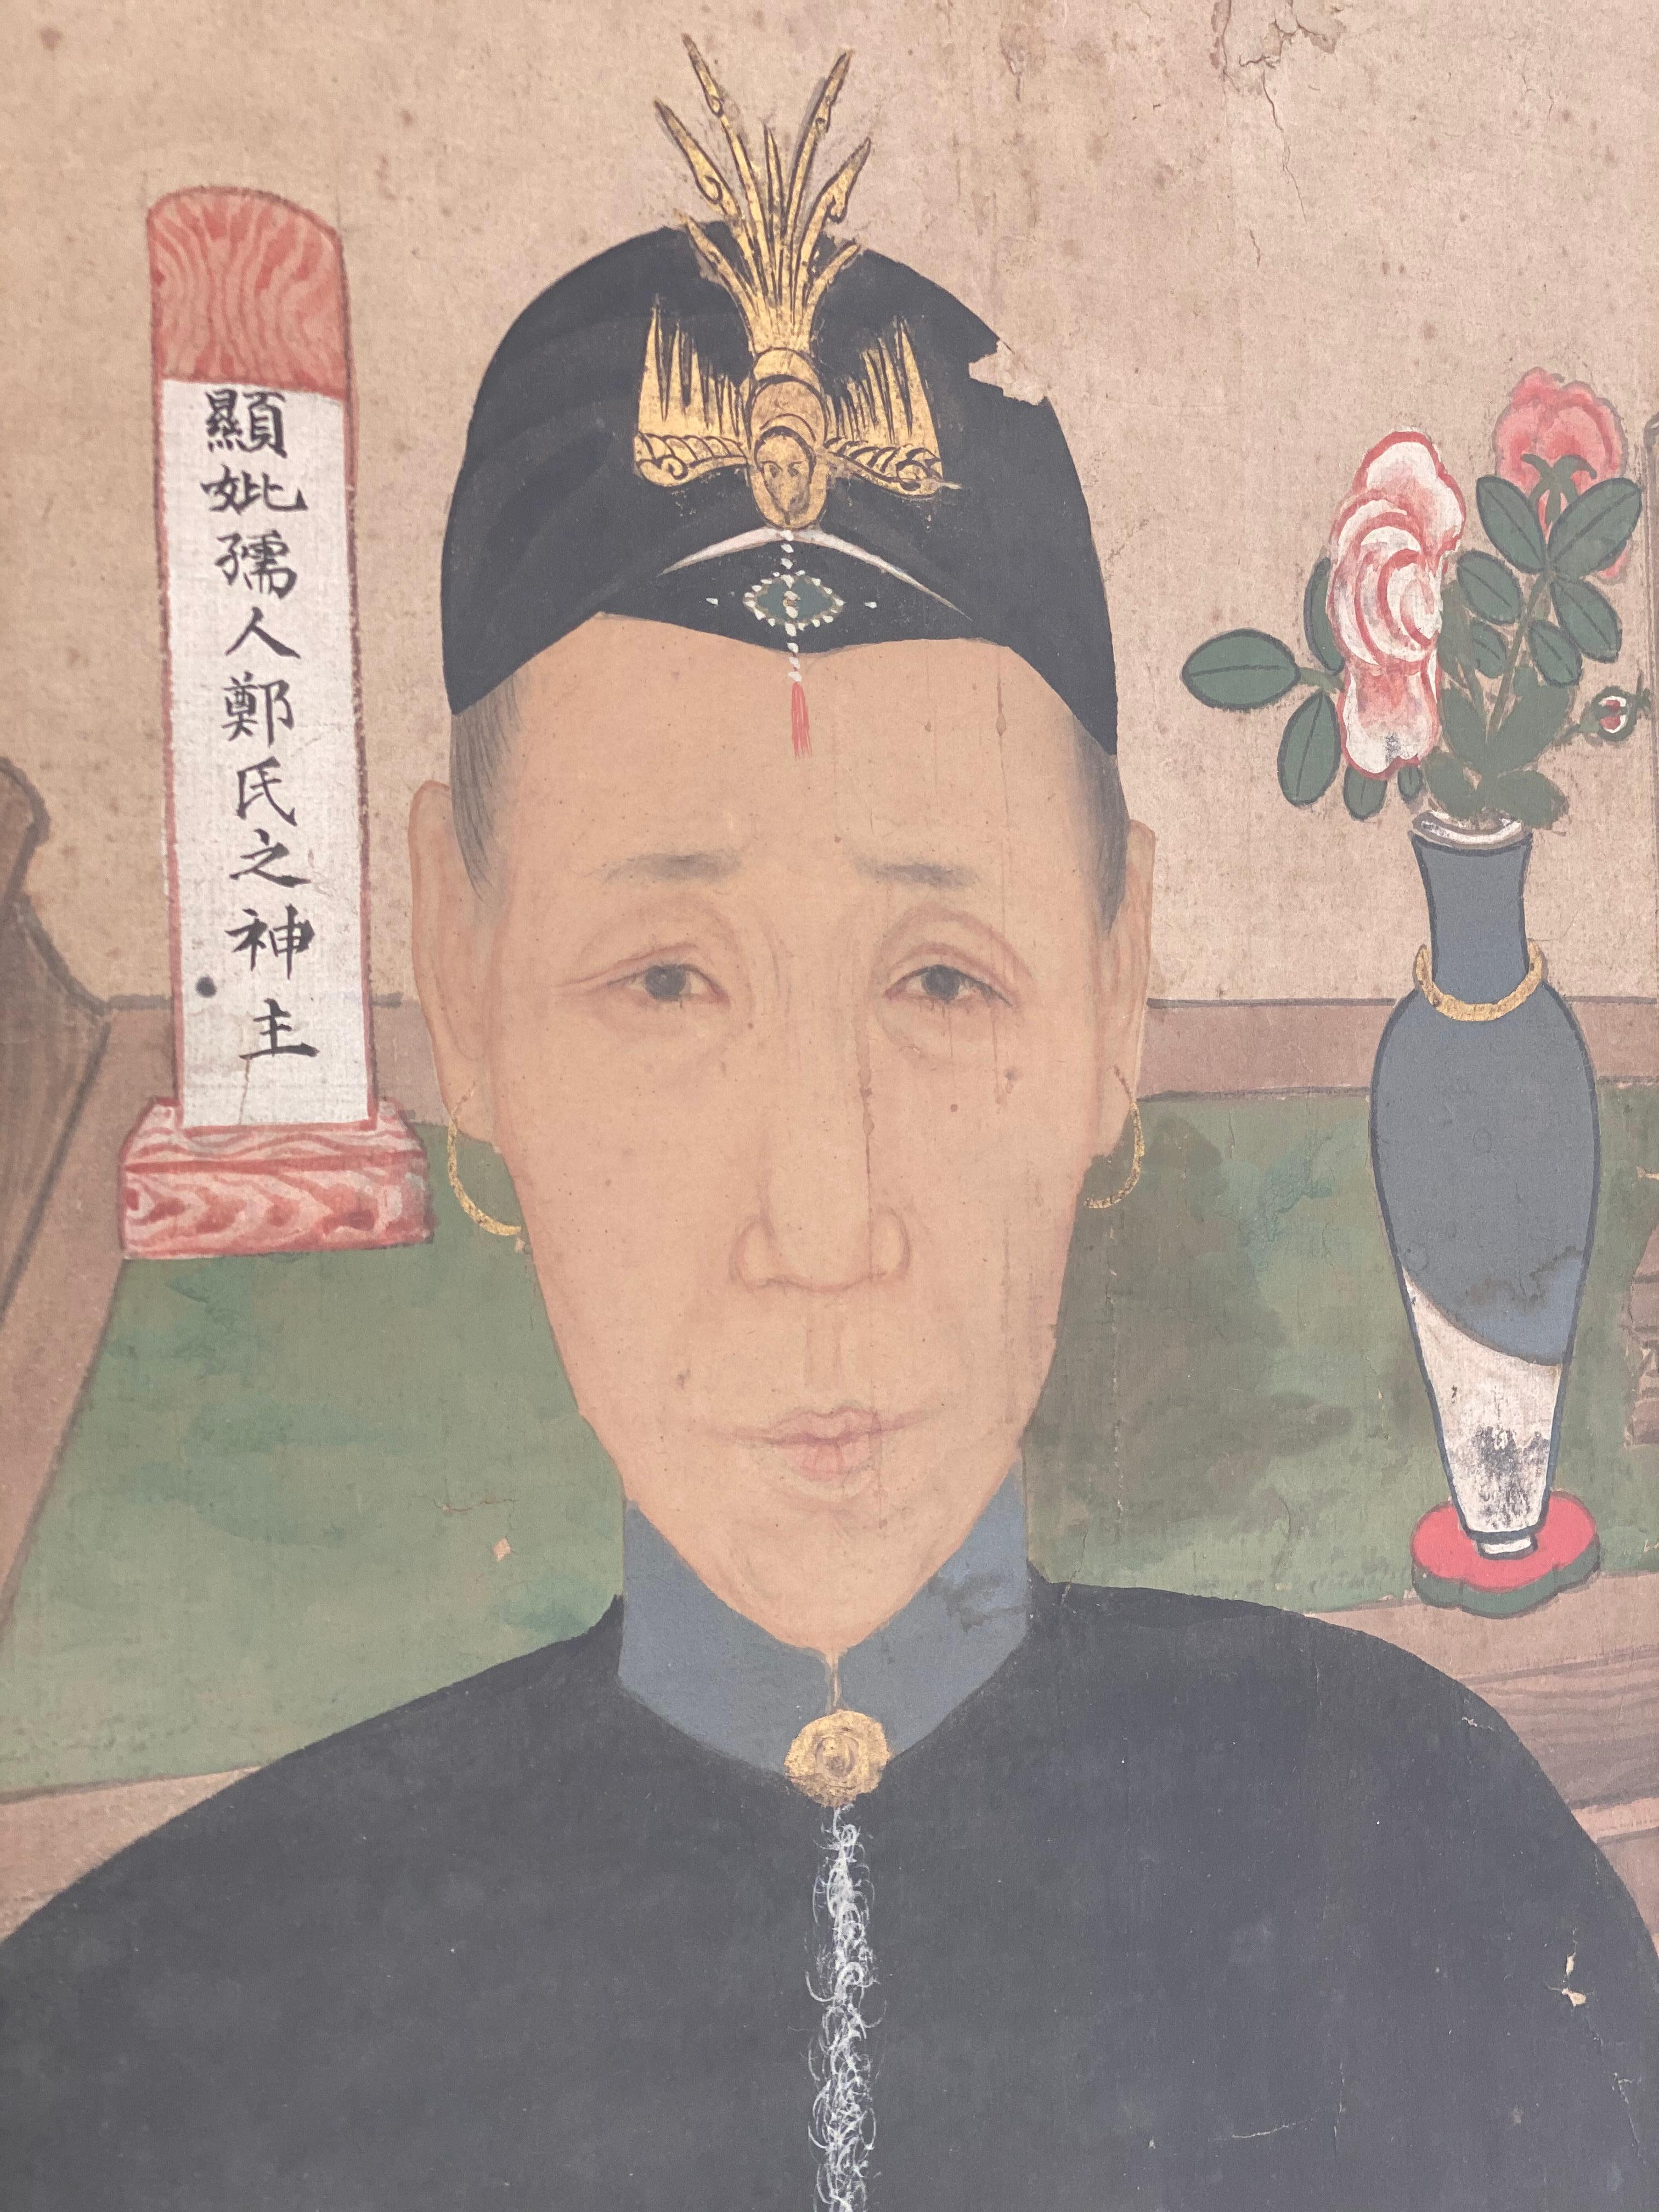 Portrait d'ancêtre chinois ancien sur toile, dynastie Qing,
montrant le patriarche et la matriarche
Portrait avec de belles couleurs chaudes et délavées, de beaux détails dans les vêtements et la décoration, 18e siècle.
Beau cadre en pin patiné.